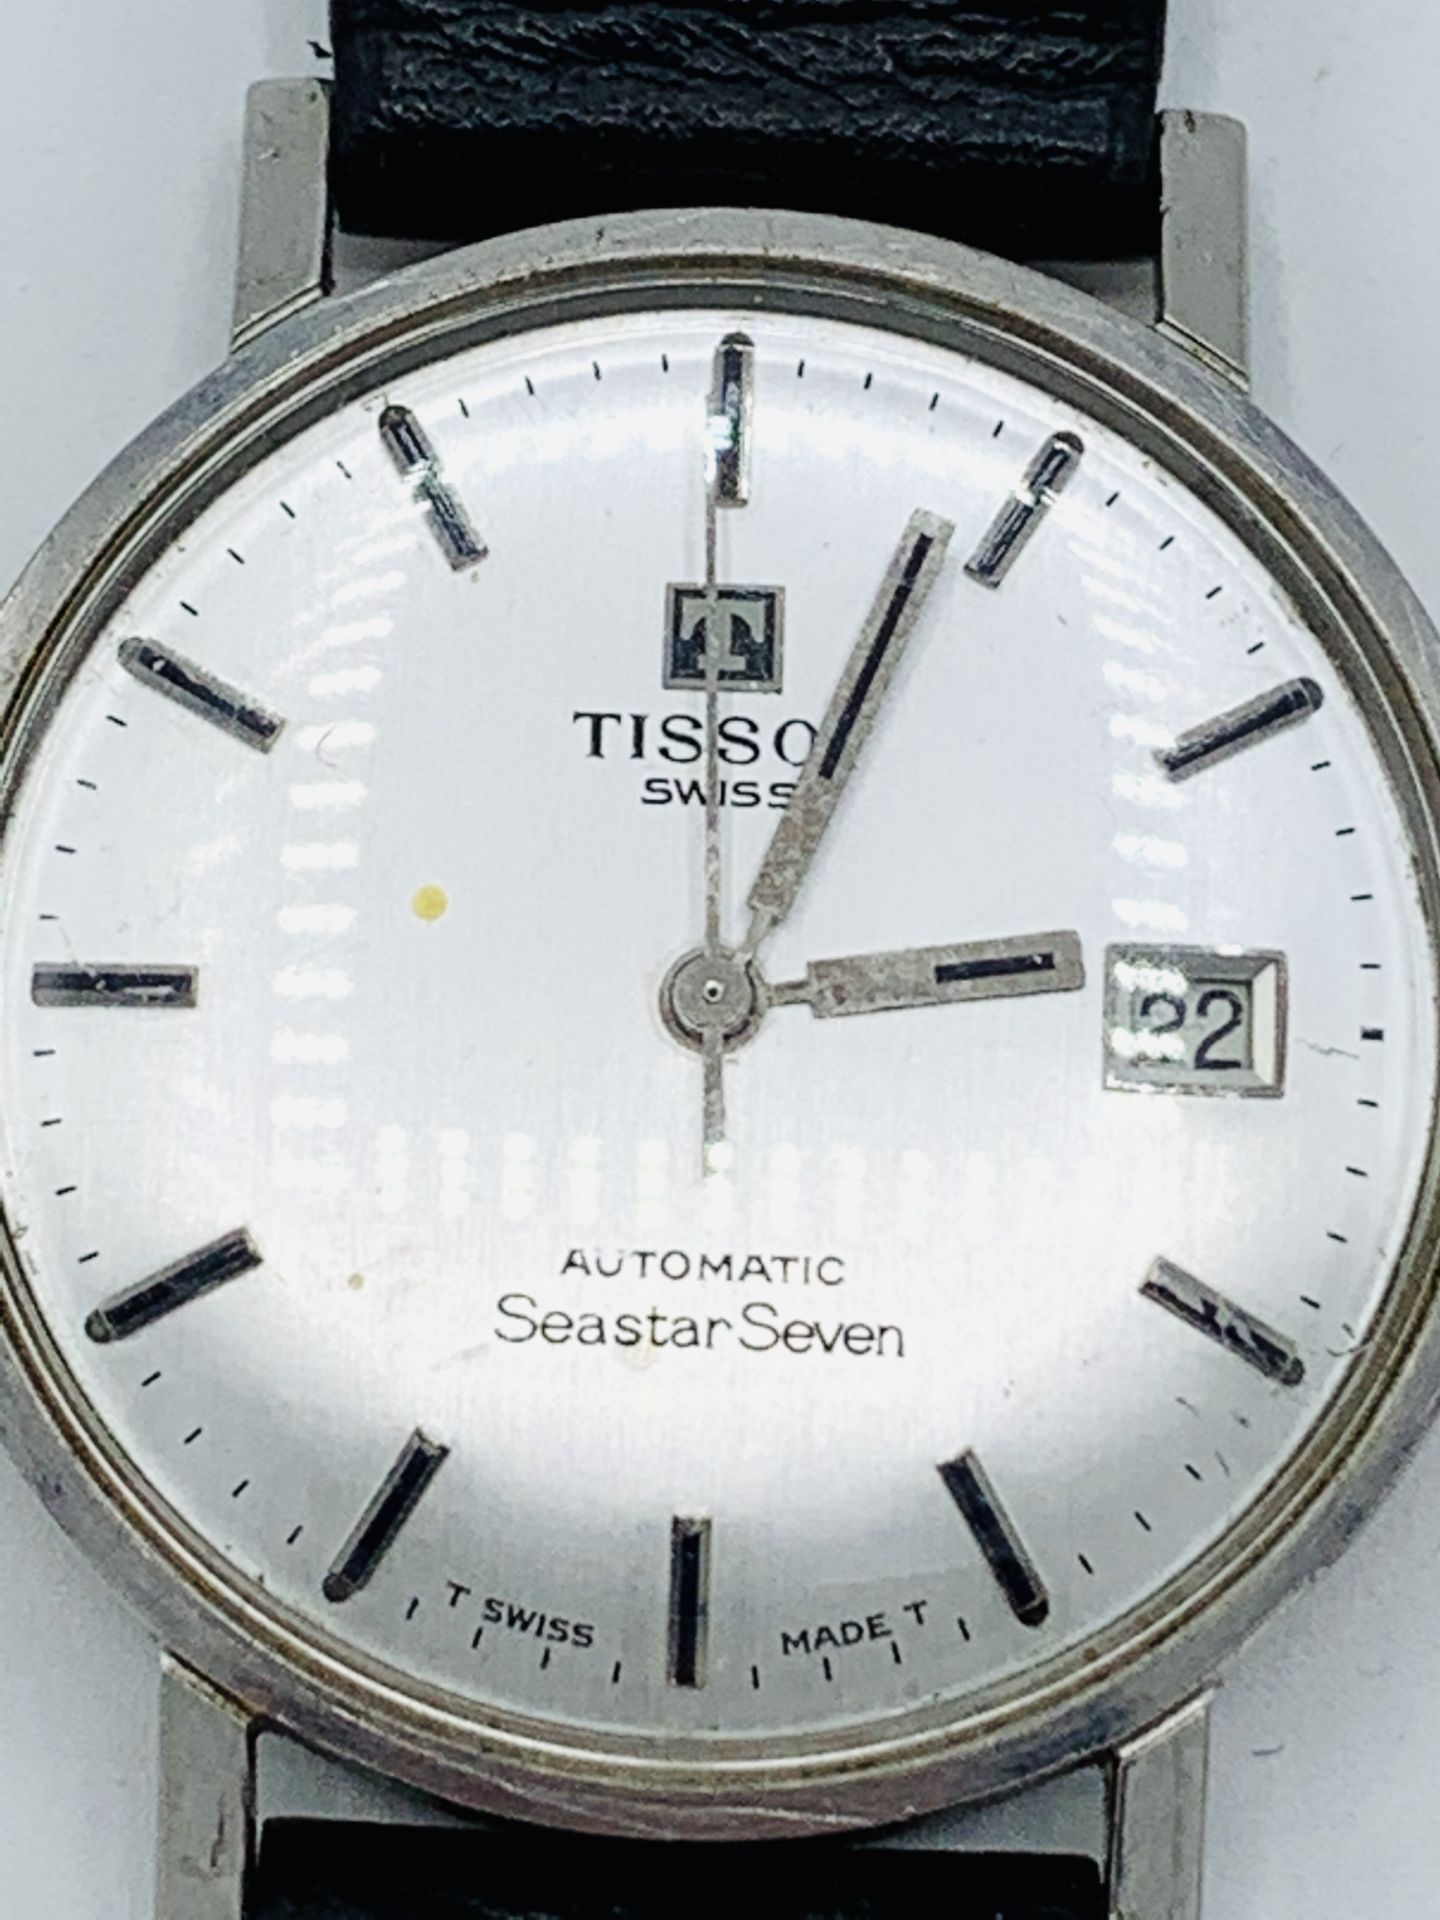 Tissot Seastar Seven gentleman's wrist watch, going - Image 4 of 4